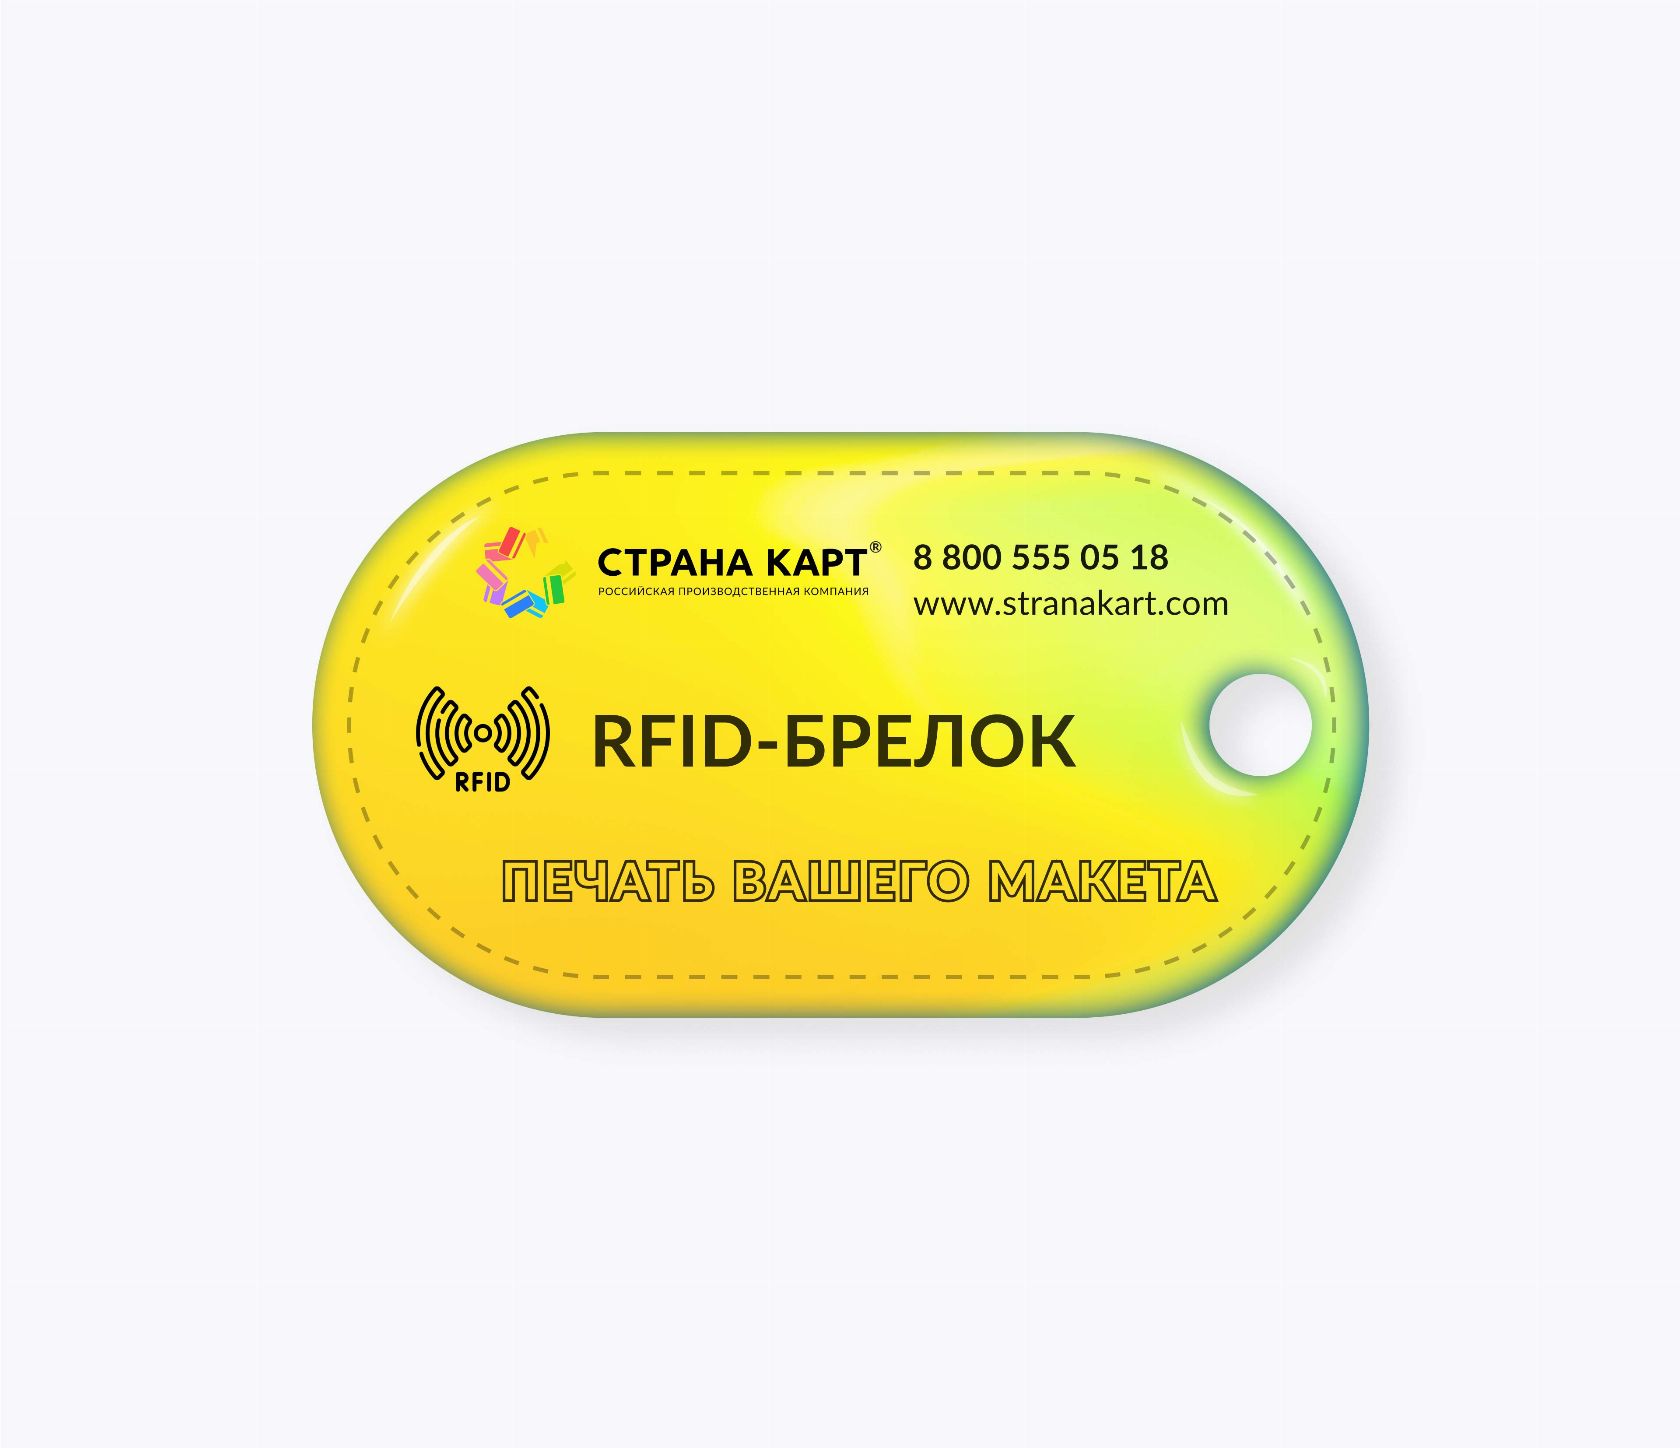 Овальные RFID-брелоки NEOKEY® с чипом и вашим дизайном